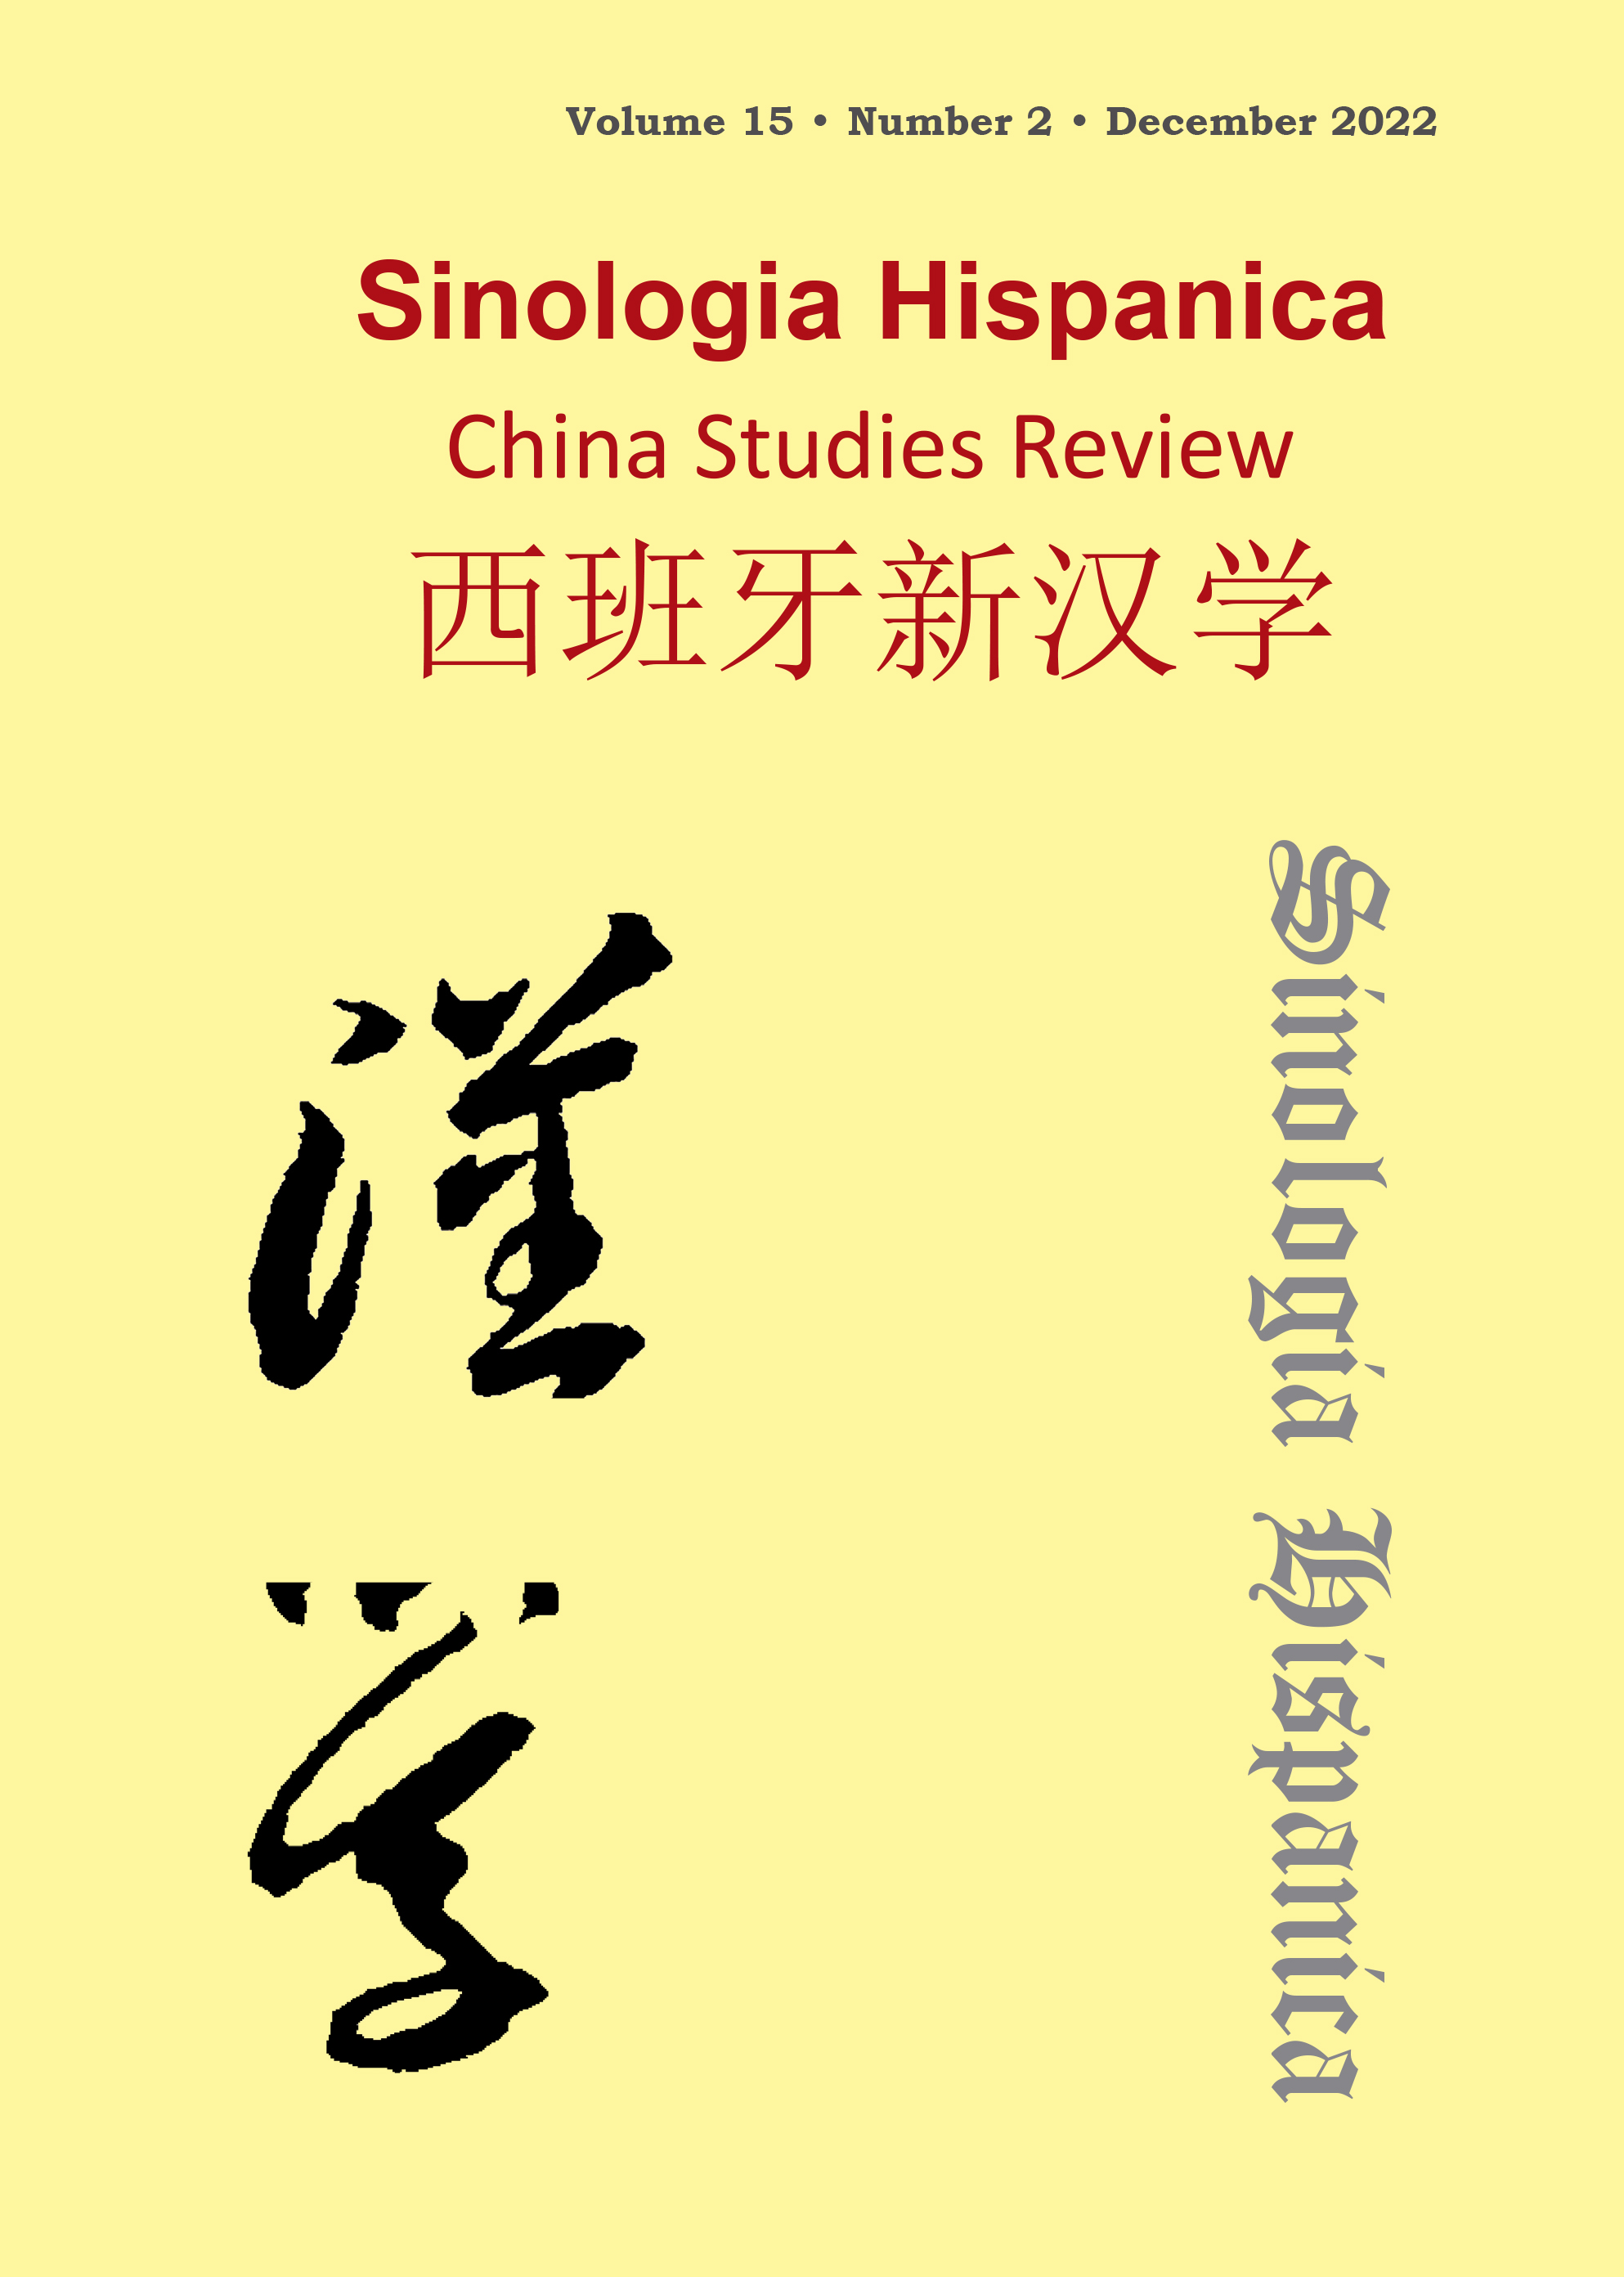 La presencia de obras clásicas chinas en Libro de Sueños de J. L. Borges: transmisión y reescritura